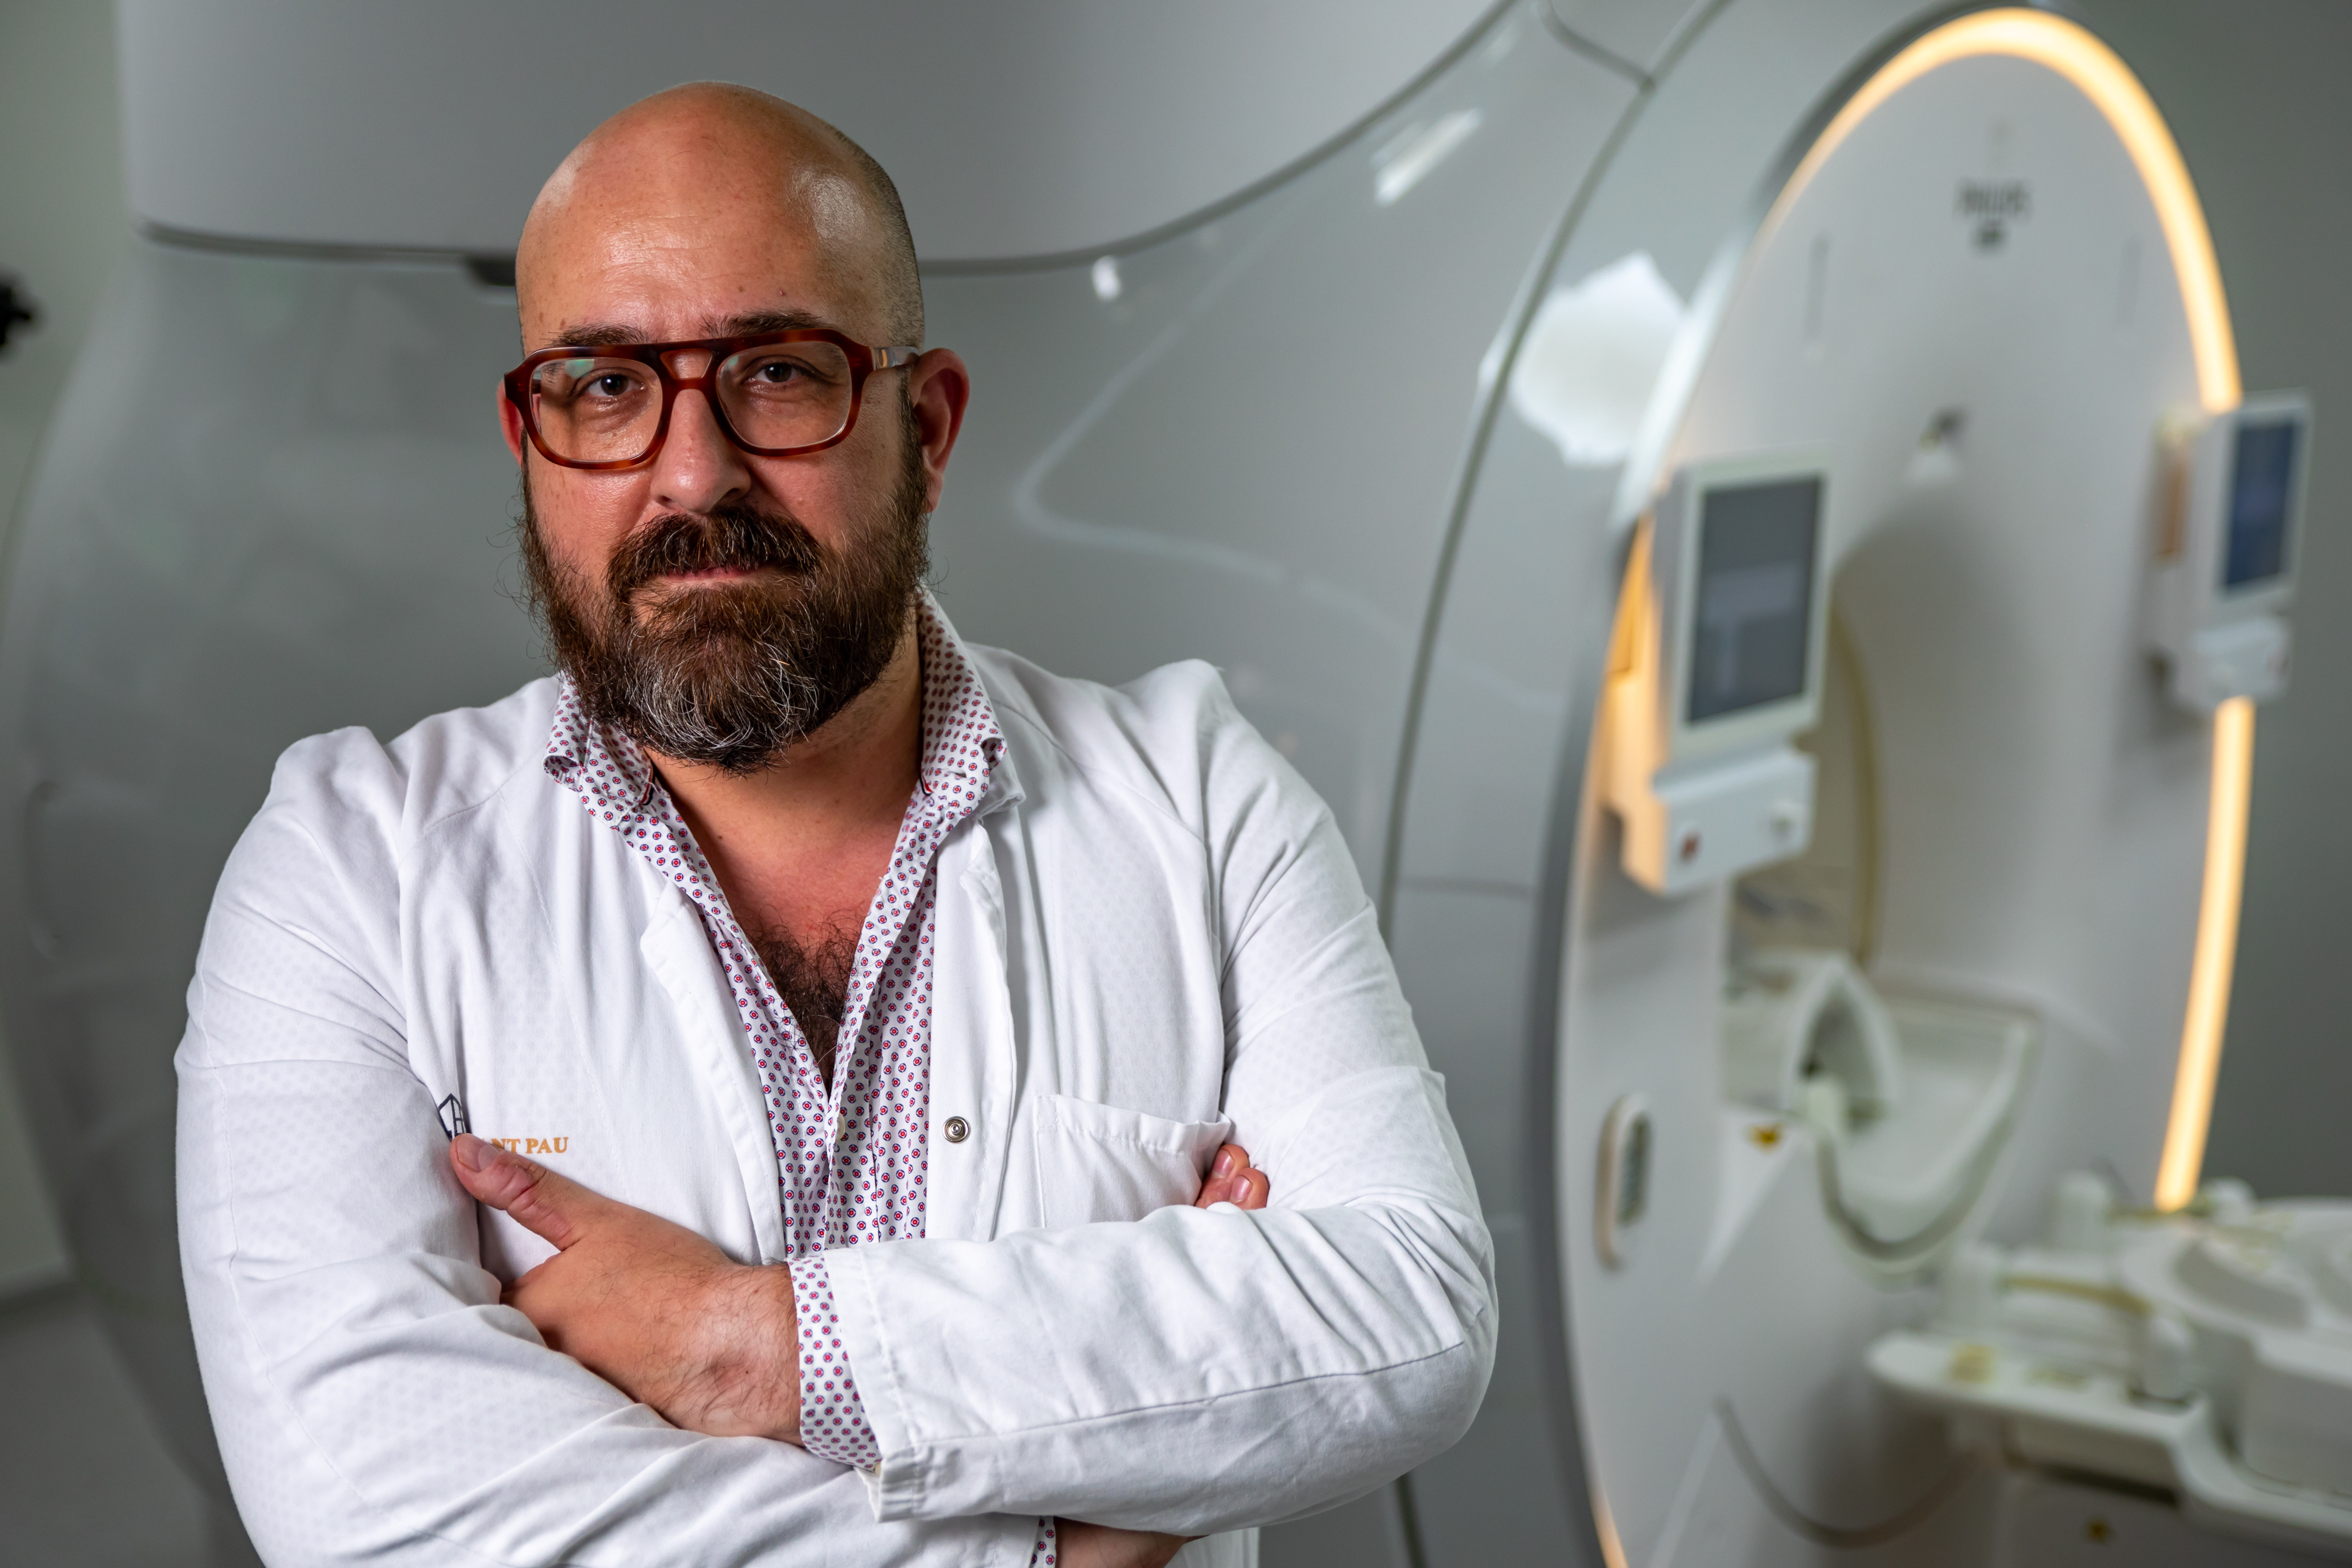 Josep Munuera, radiólogo: “Las herramientas de inteligencia artificial no sustituyen al médico, lo empoderan”